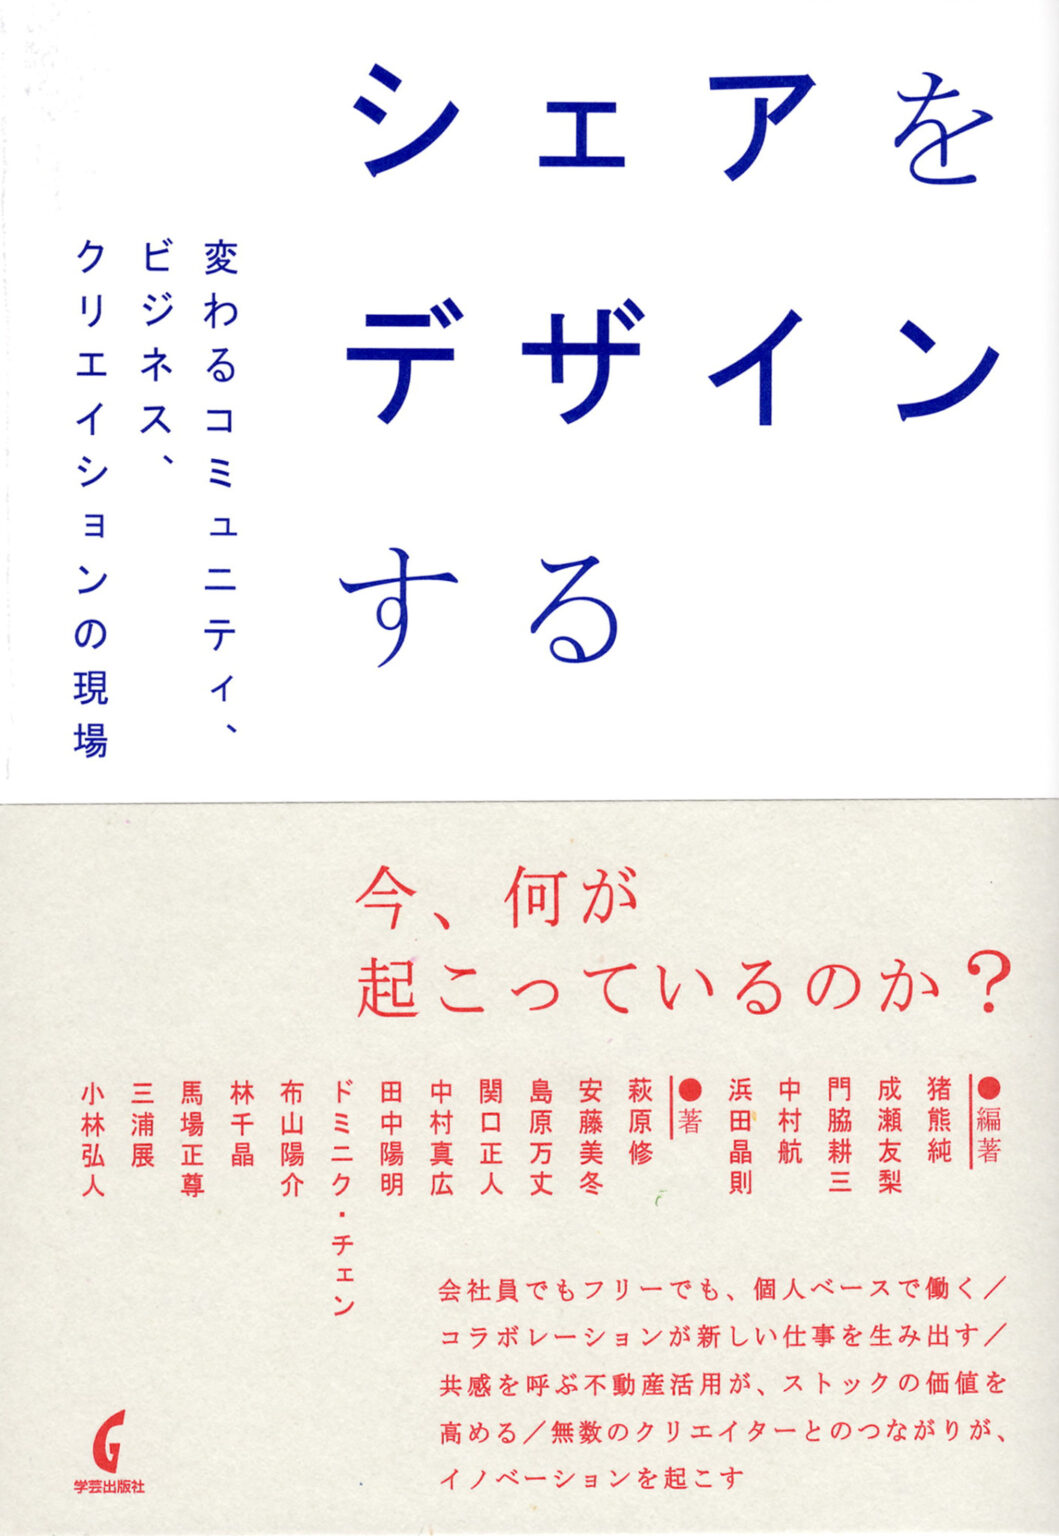 朝日新聞書評　隈研吾
「私有からの転換、日本に好機」
book.asahi.com/11621831